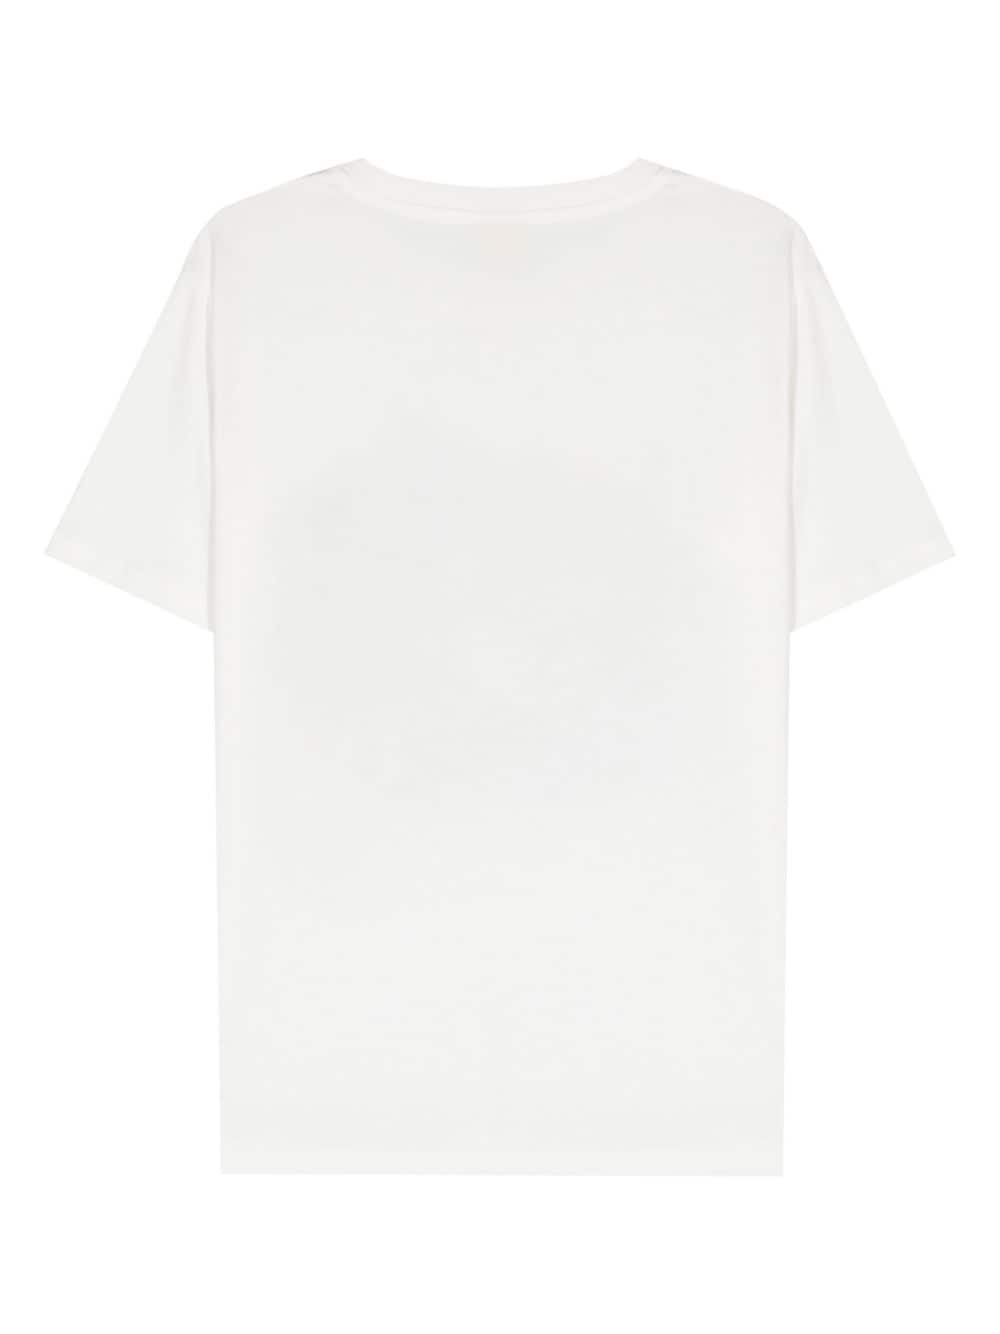 Peuterey PEUTEREY- Printed Cotton T-shirt